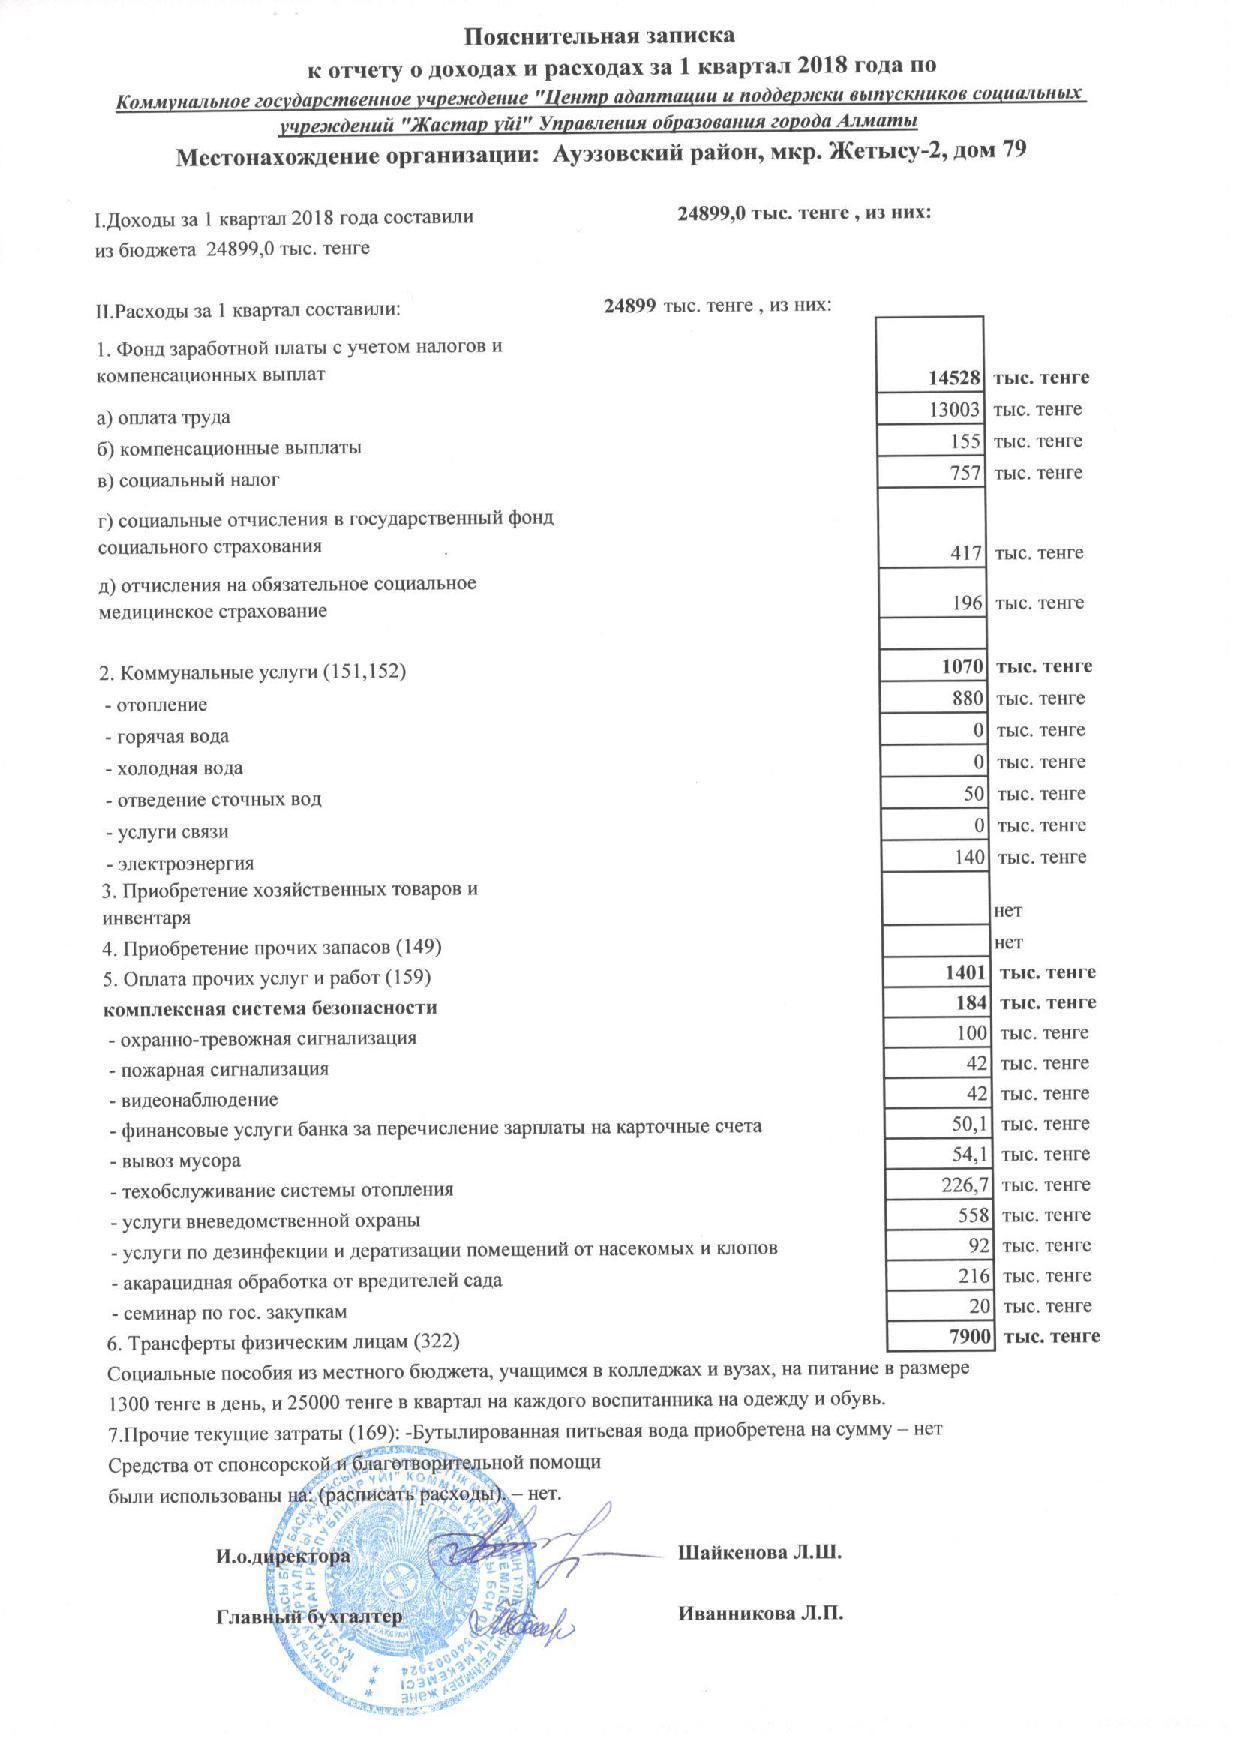 Отчет о доходах и расходах за 1кв 2018г